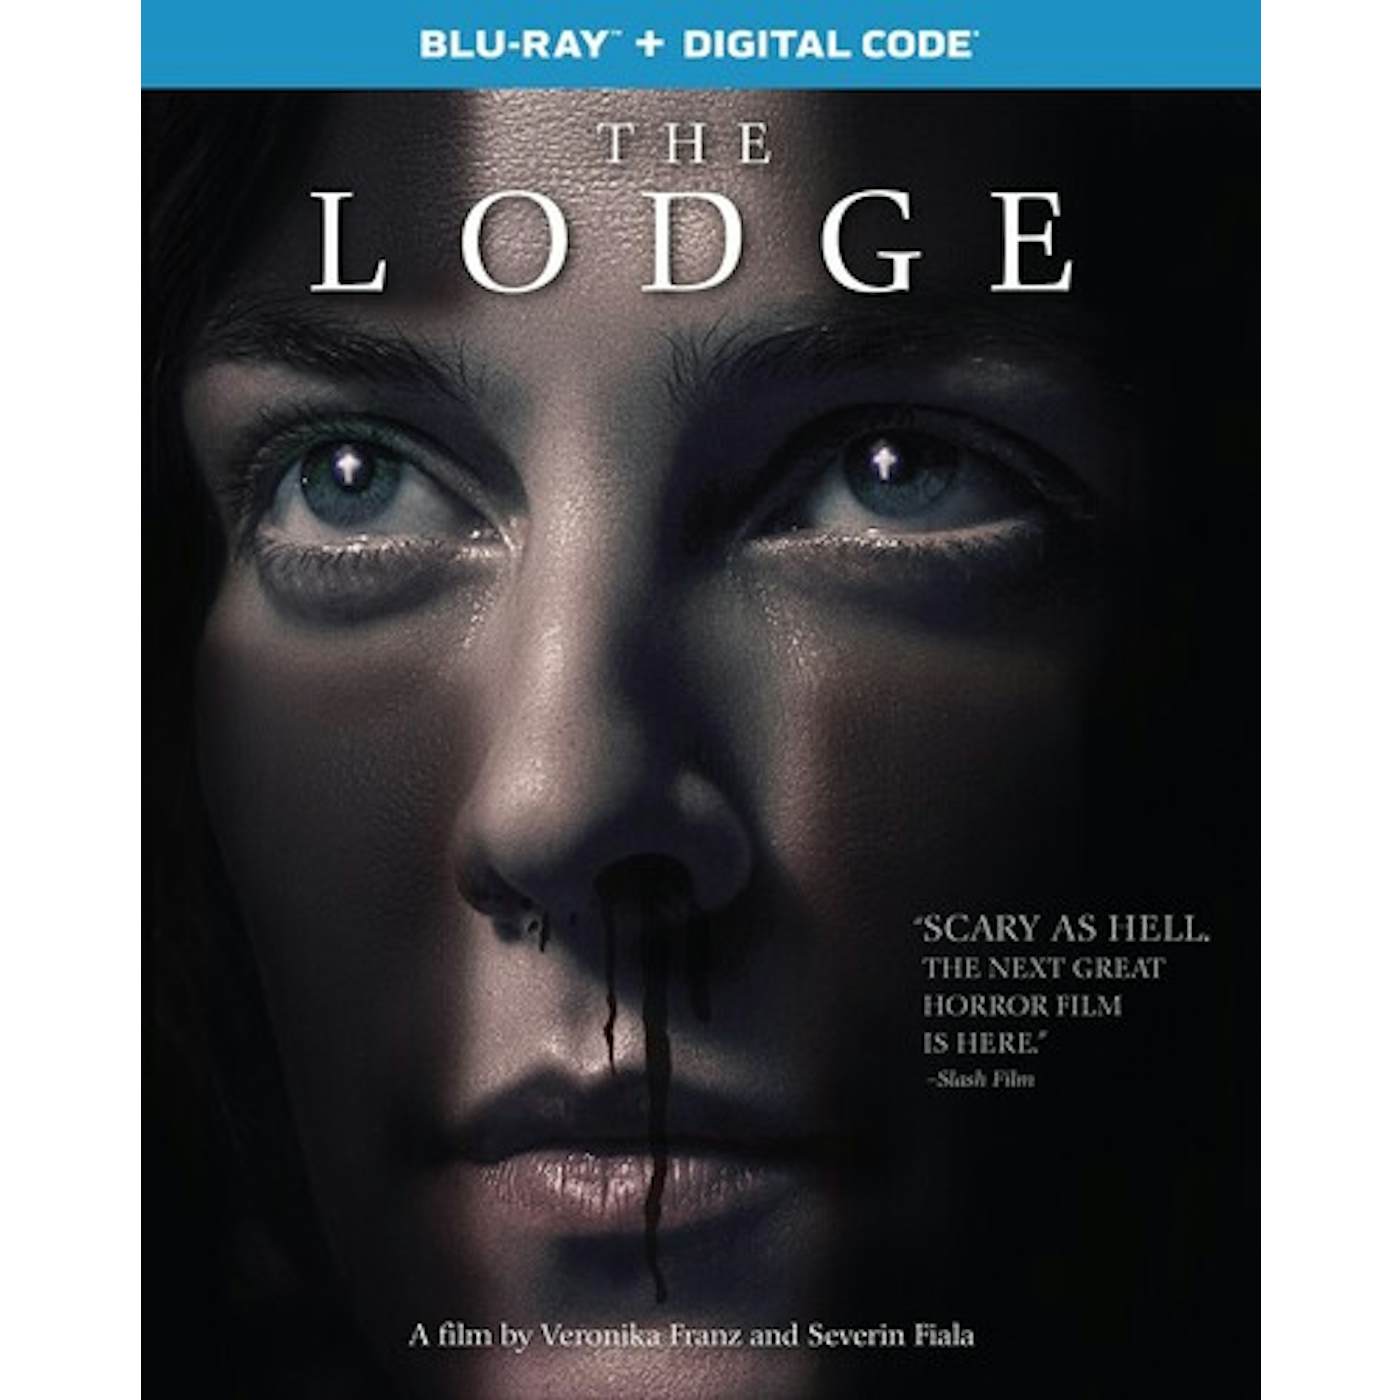 LODGE Blu-ray